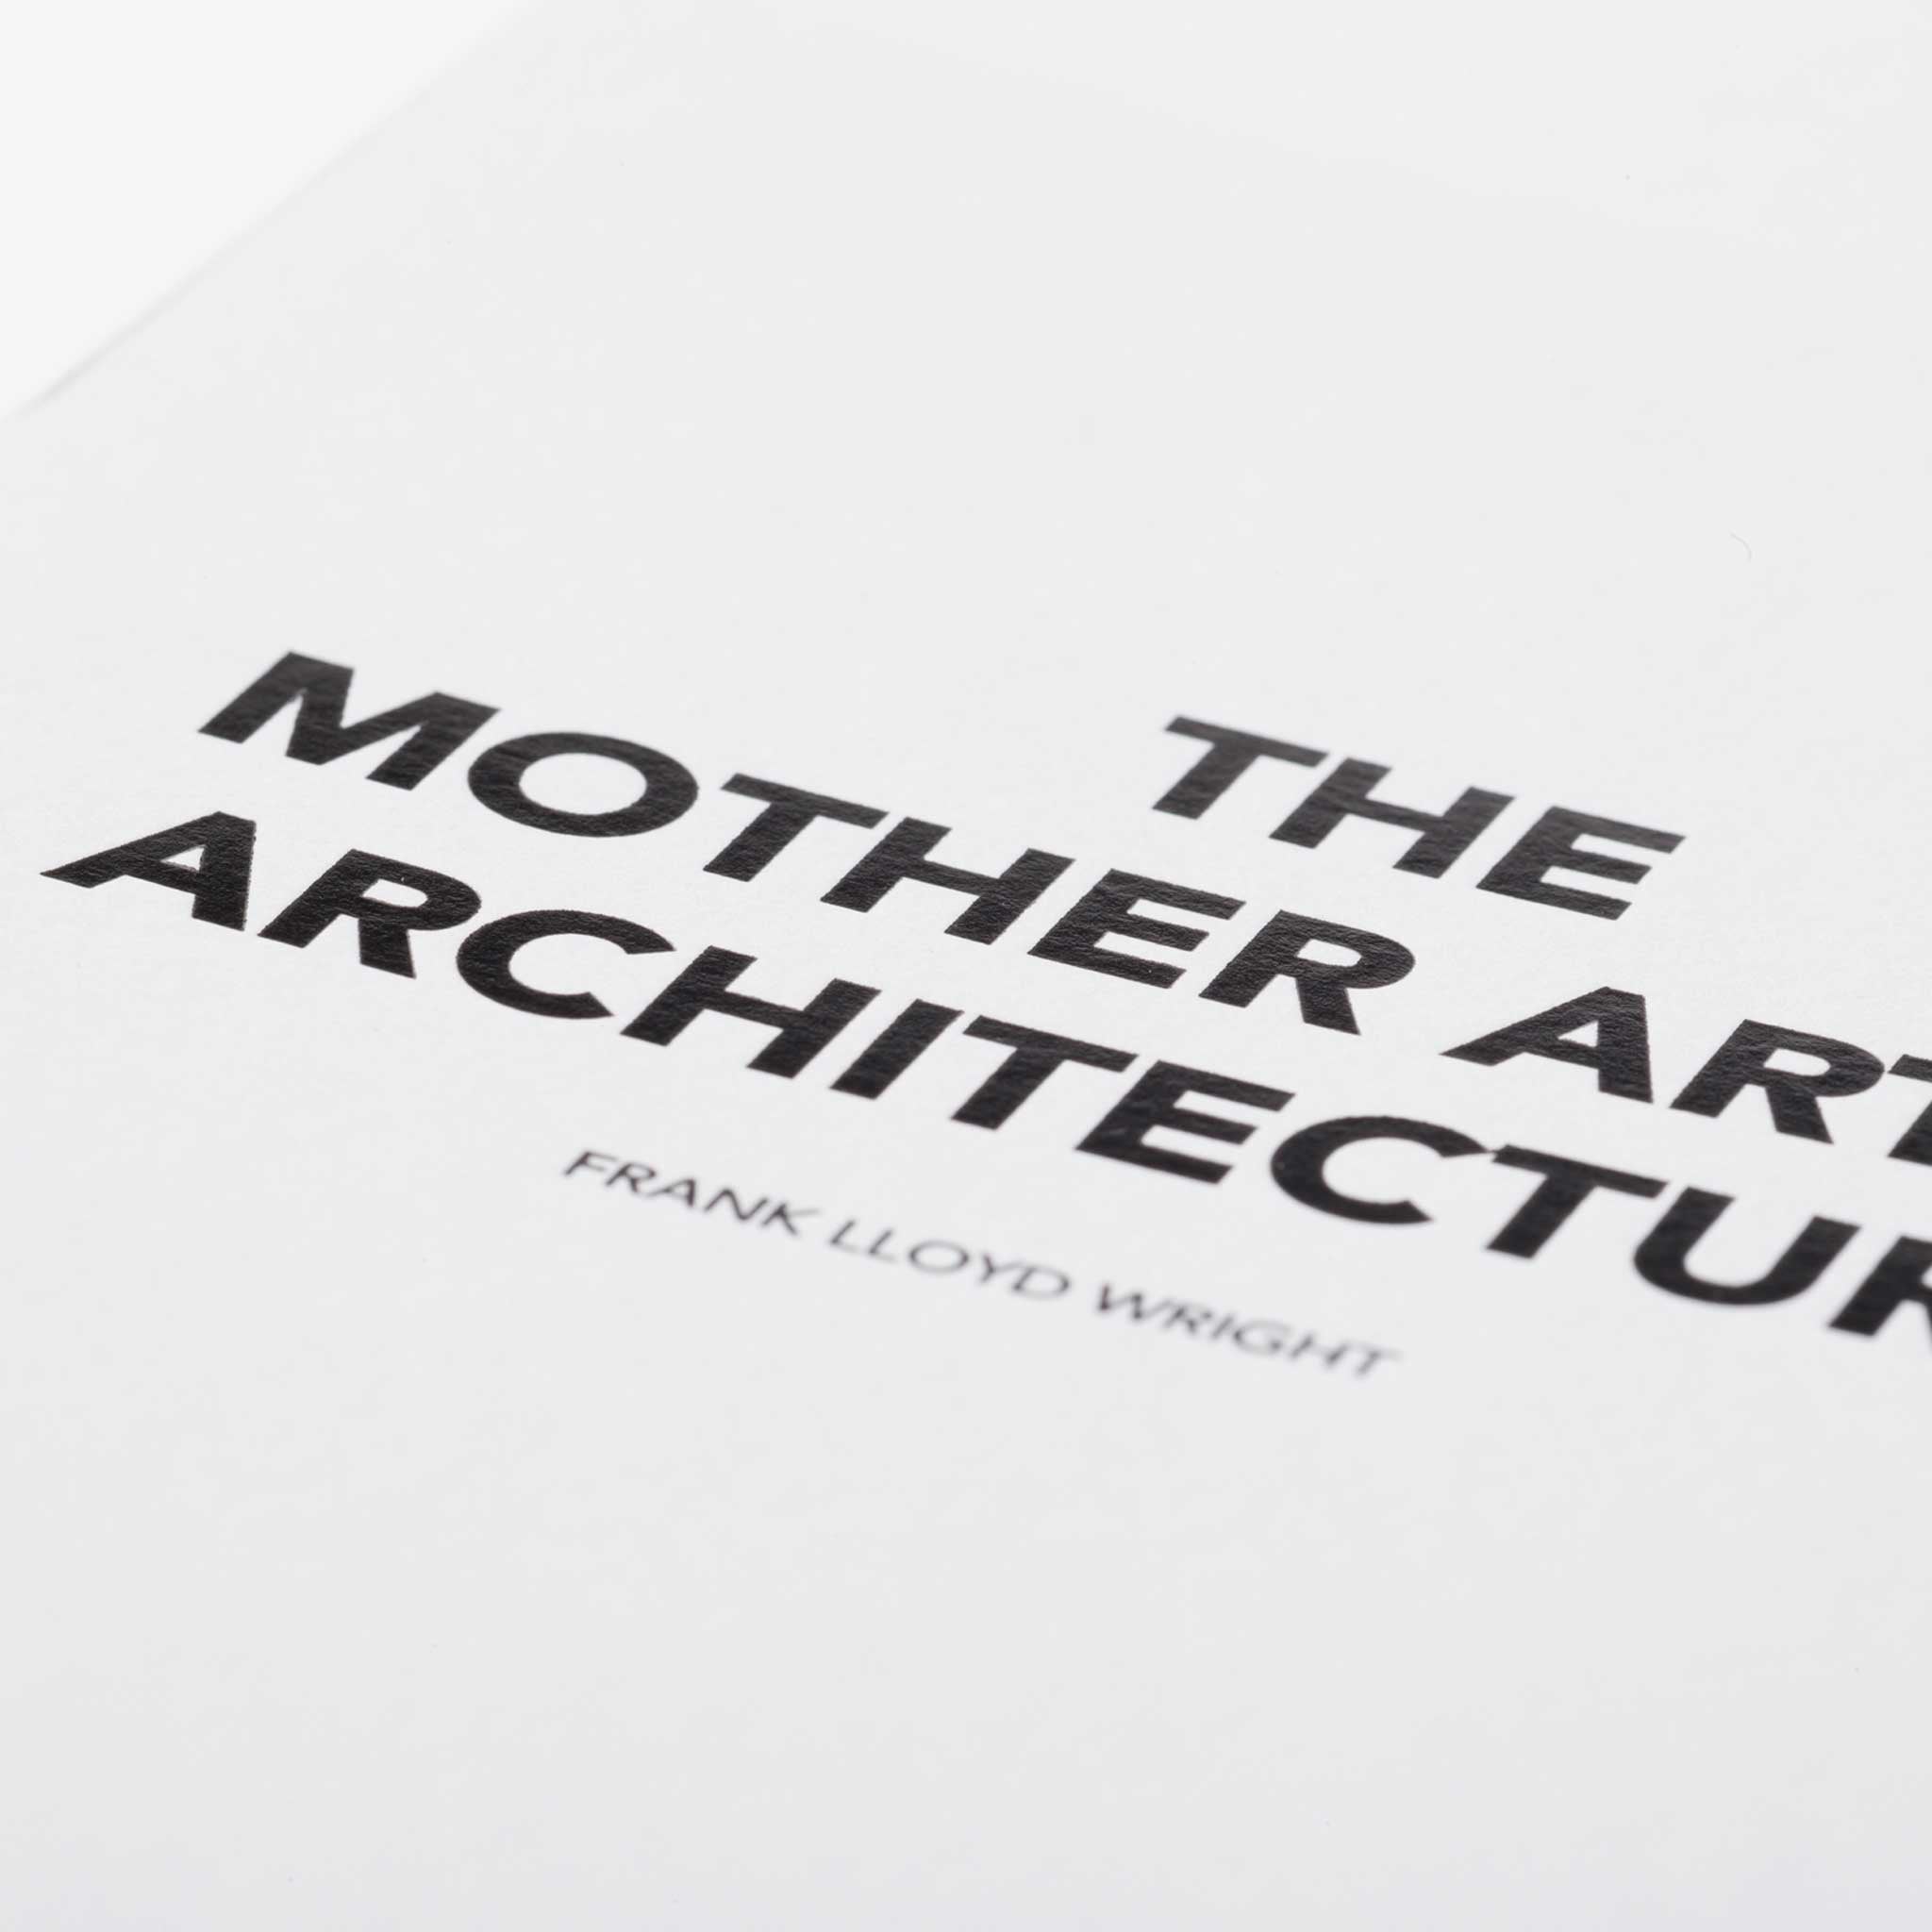 THE MOTHER ART IS ARCHITECTURE | GRUSSKARTE | Architekten Zitate | 10x15 cm | Cinqpoints